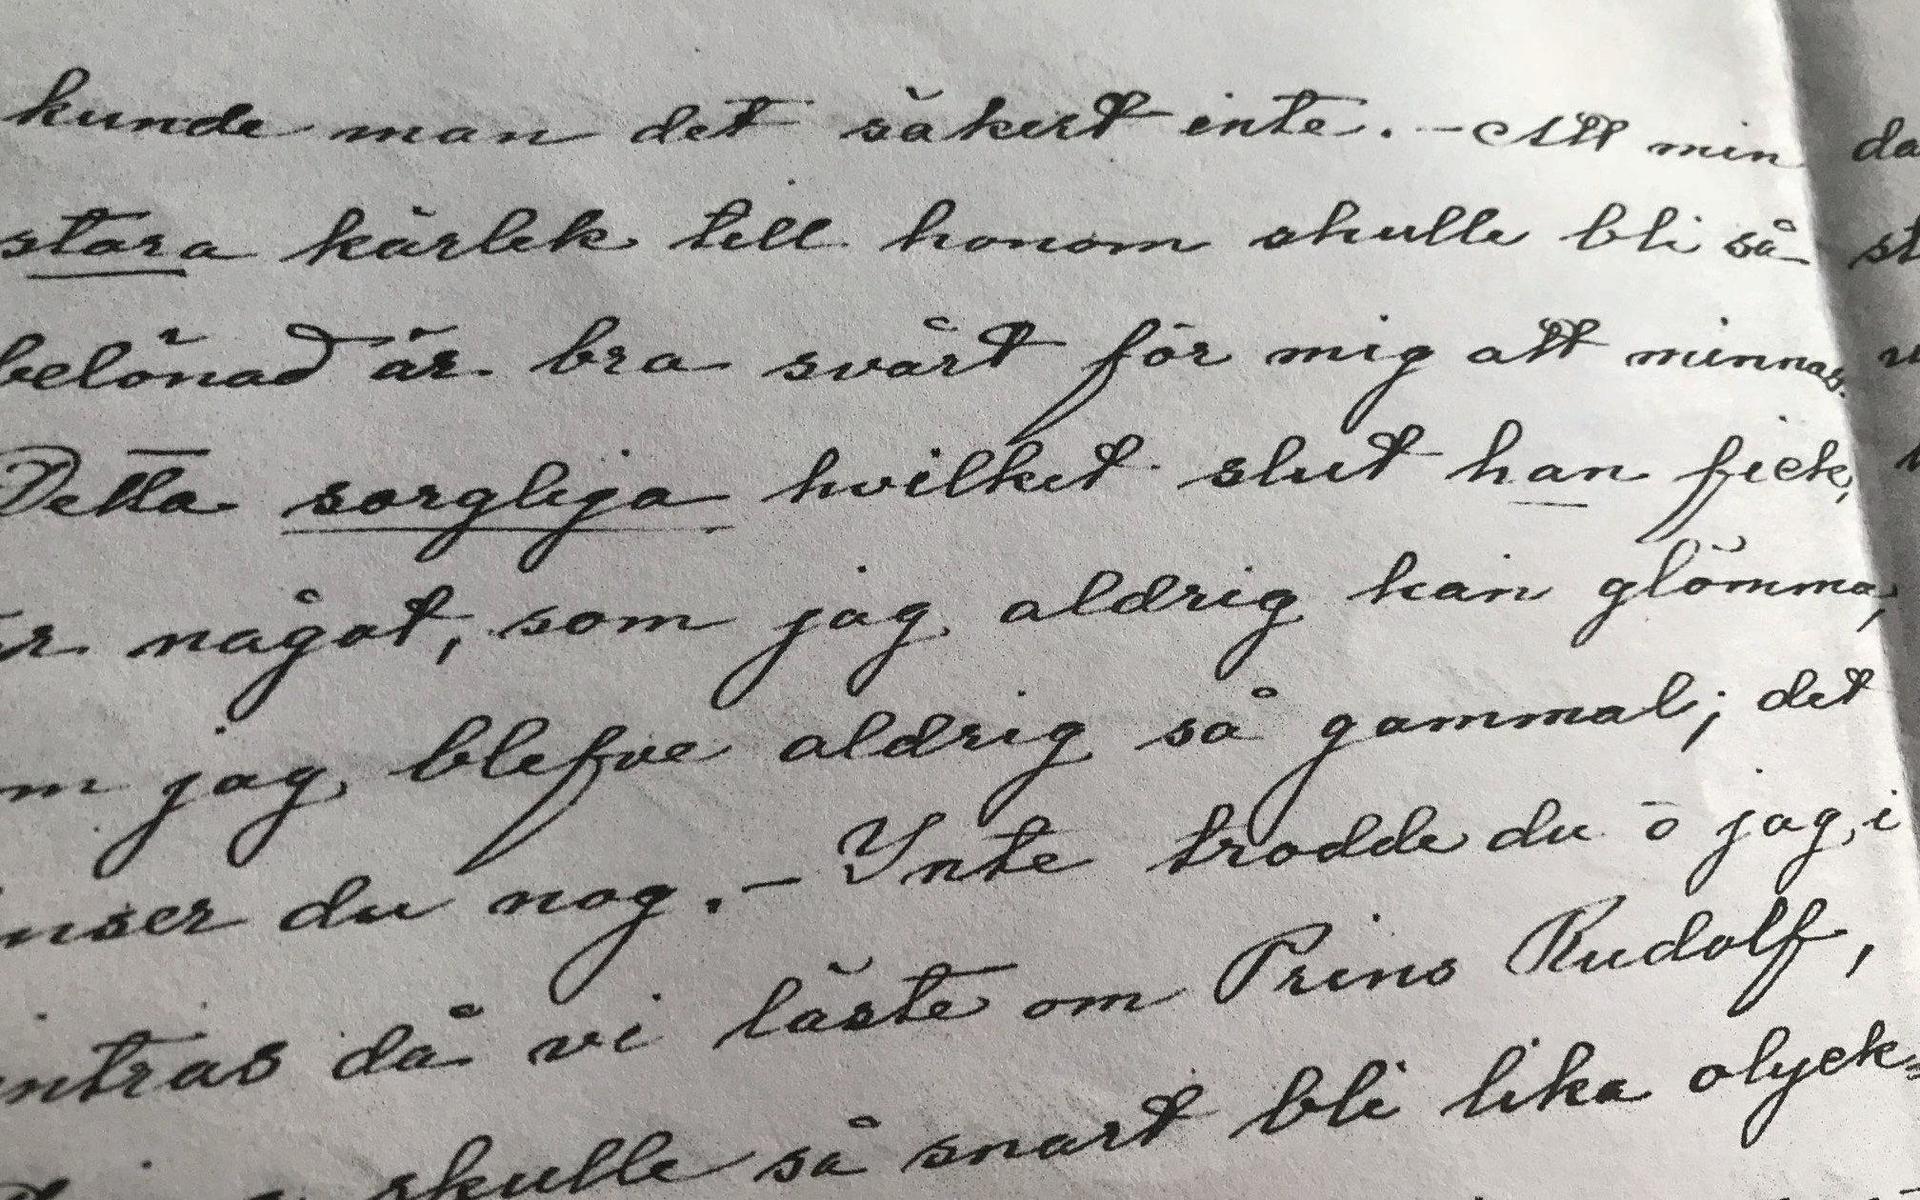 6 augusti 1889 skriver Luitgard till sin svägerska: ”Ännu är det mig en gåta hur Sixten har kunnat handla som han har gjort.”